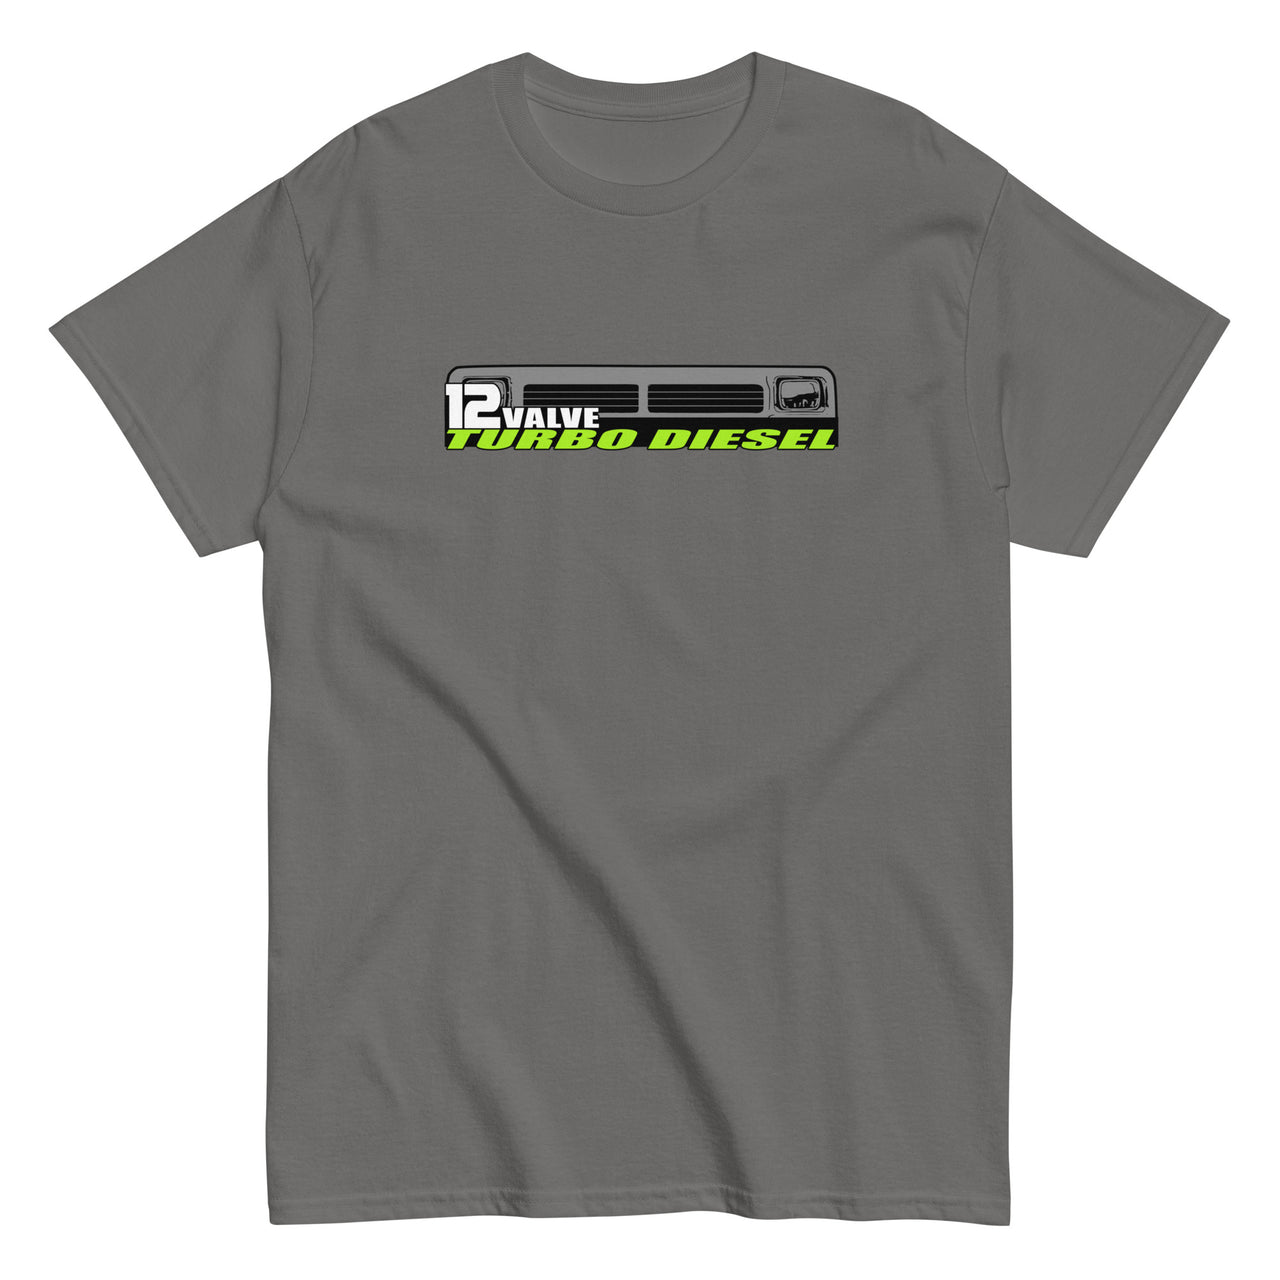 12v diesel first gen grille t-shirt in grey